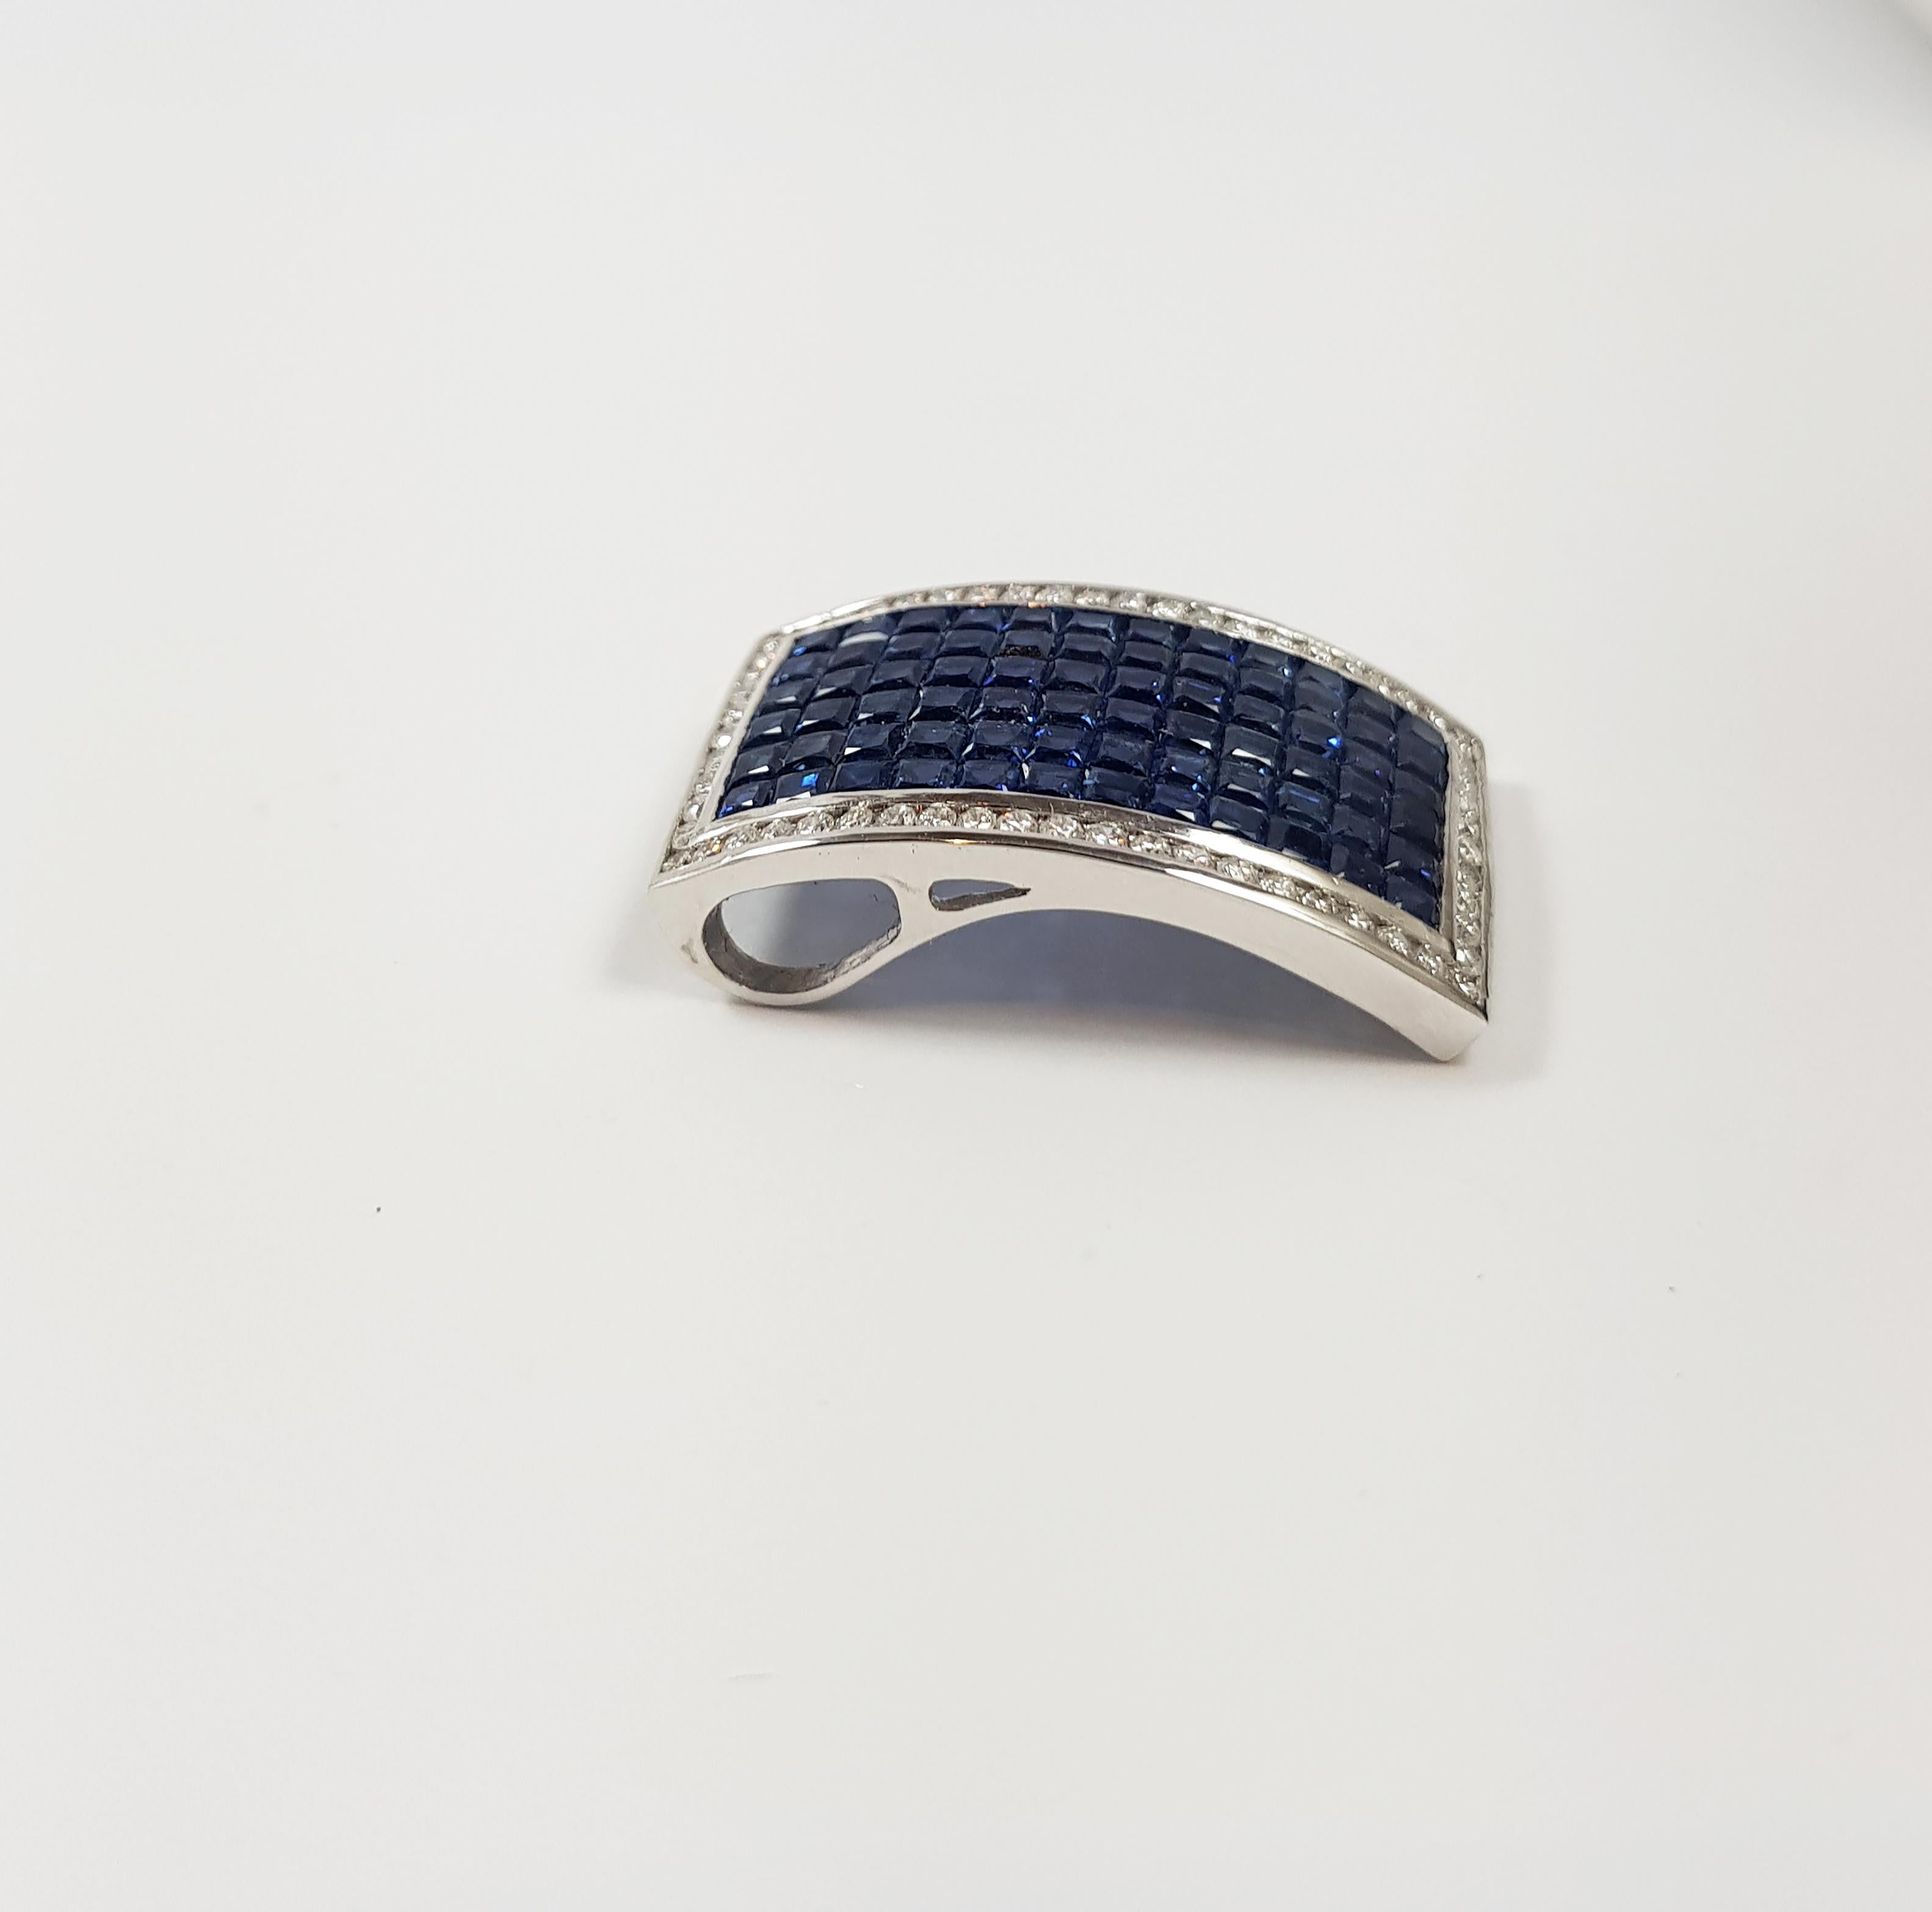 Pendentif en saphir bleu de 6,35 carats et diamant de 0,60 carat serti dans une monture en or blanc 18 carats
(chaîne non incluse)

Largeur : 1,7 cm
Longueur : 2,8 cm 

